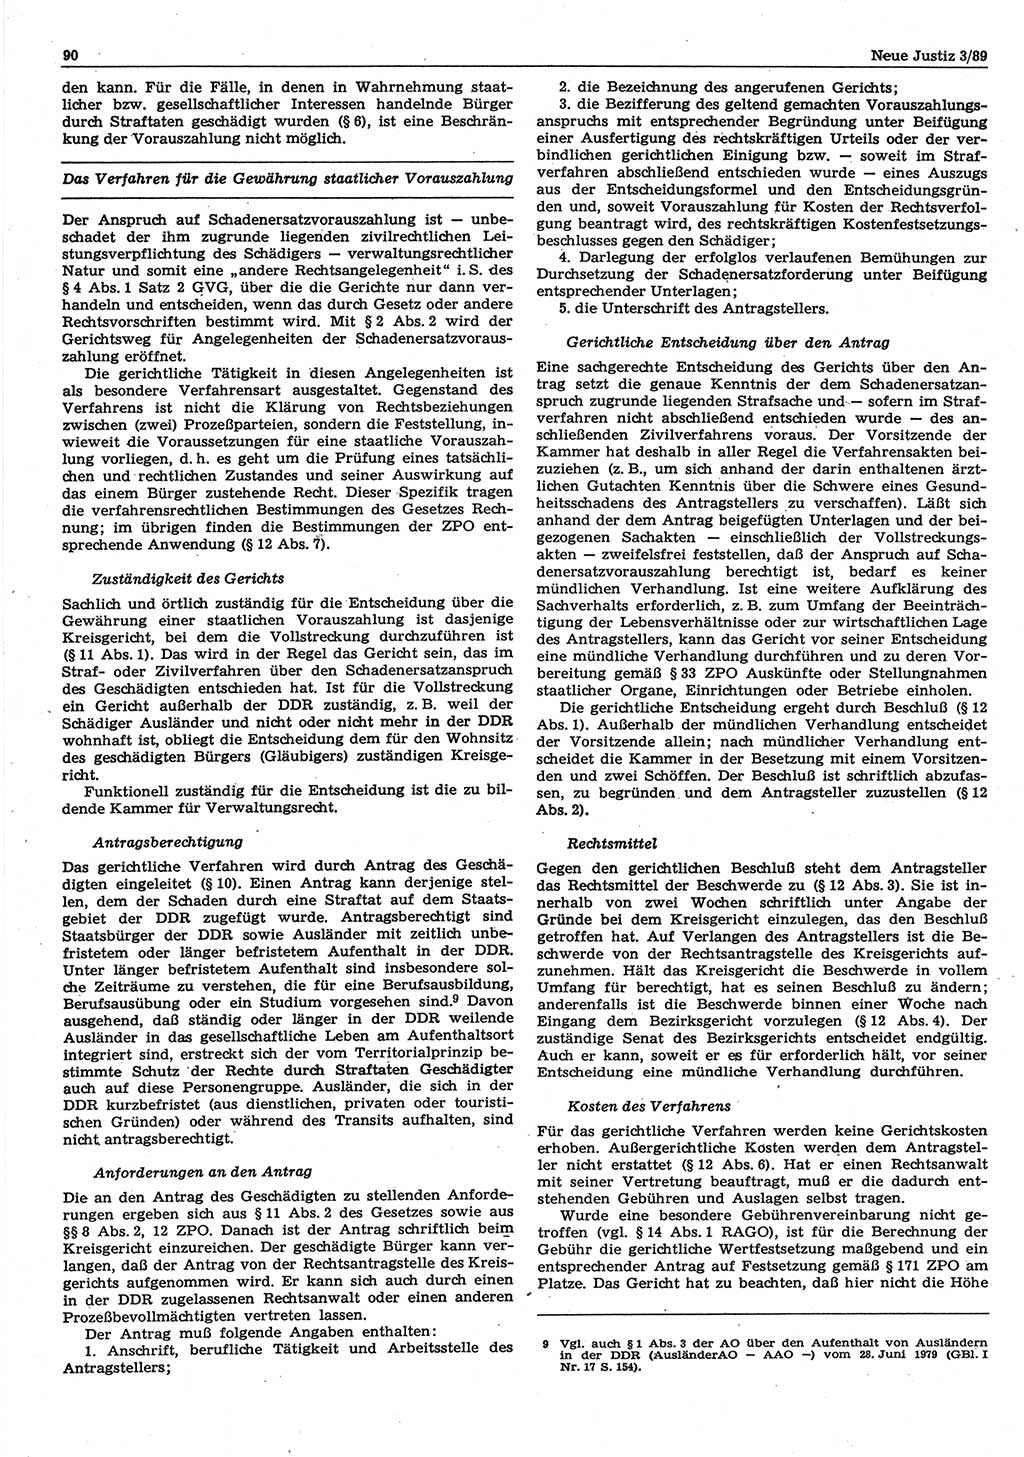 Neue Justiz (NJ), Zeitschrift für sozialistisches Recht und Gesetzlichkeit [Deutsche Demokratische Republik (DDR)], 43. Jahrgang 1989, Seite 90 (NJ DDR 1989, S. 90)